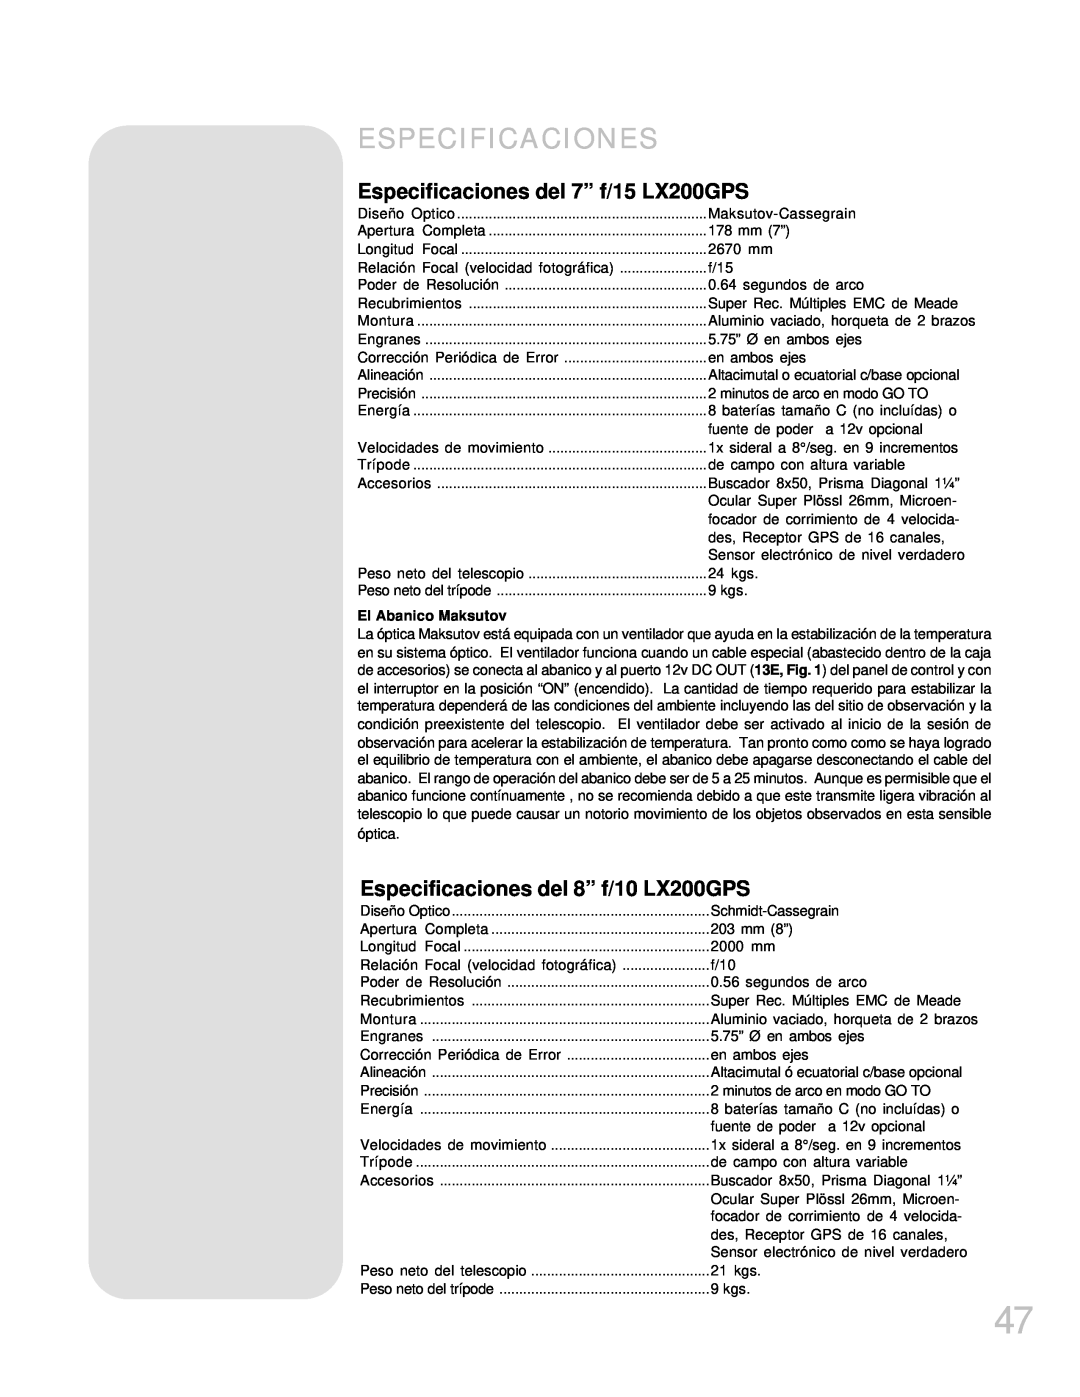 Meade manual Especificaciones del 7” f/15 LX200GPS, Especificaciones del 8” f/10 LX200GPS, El Abanico Maksutov 